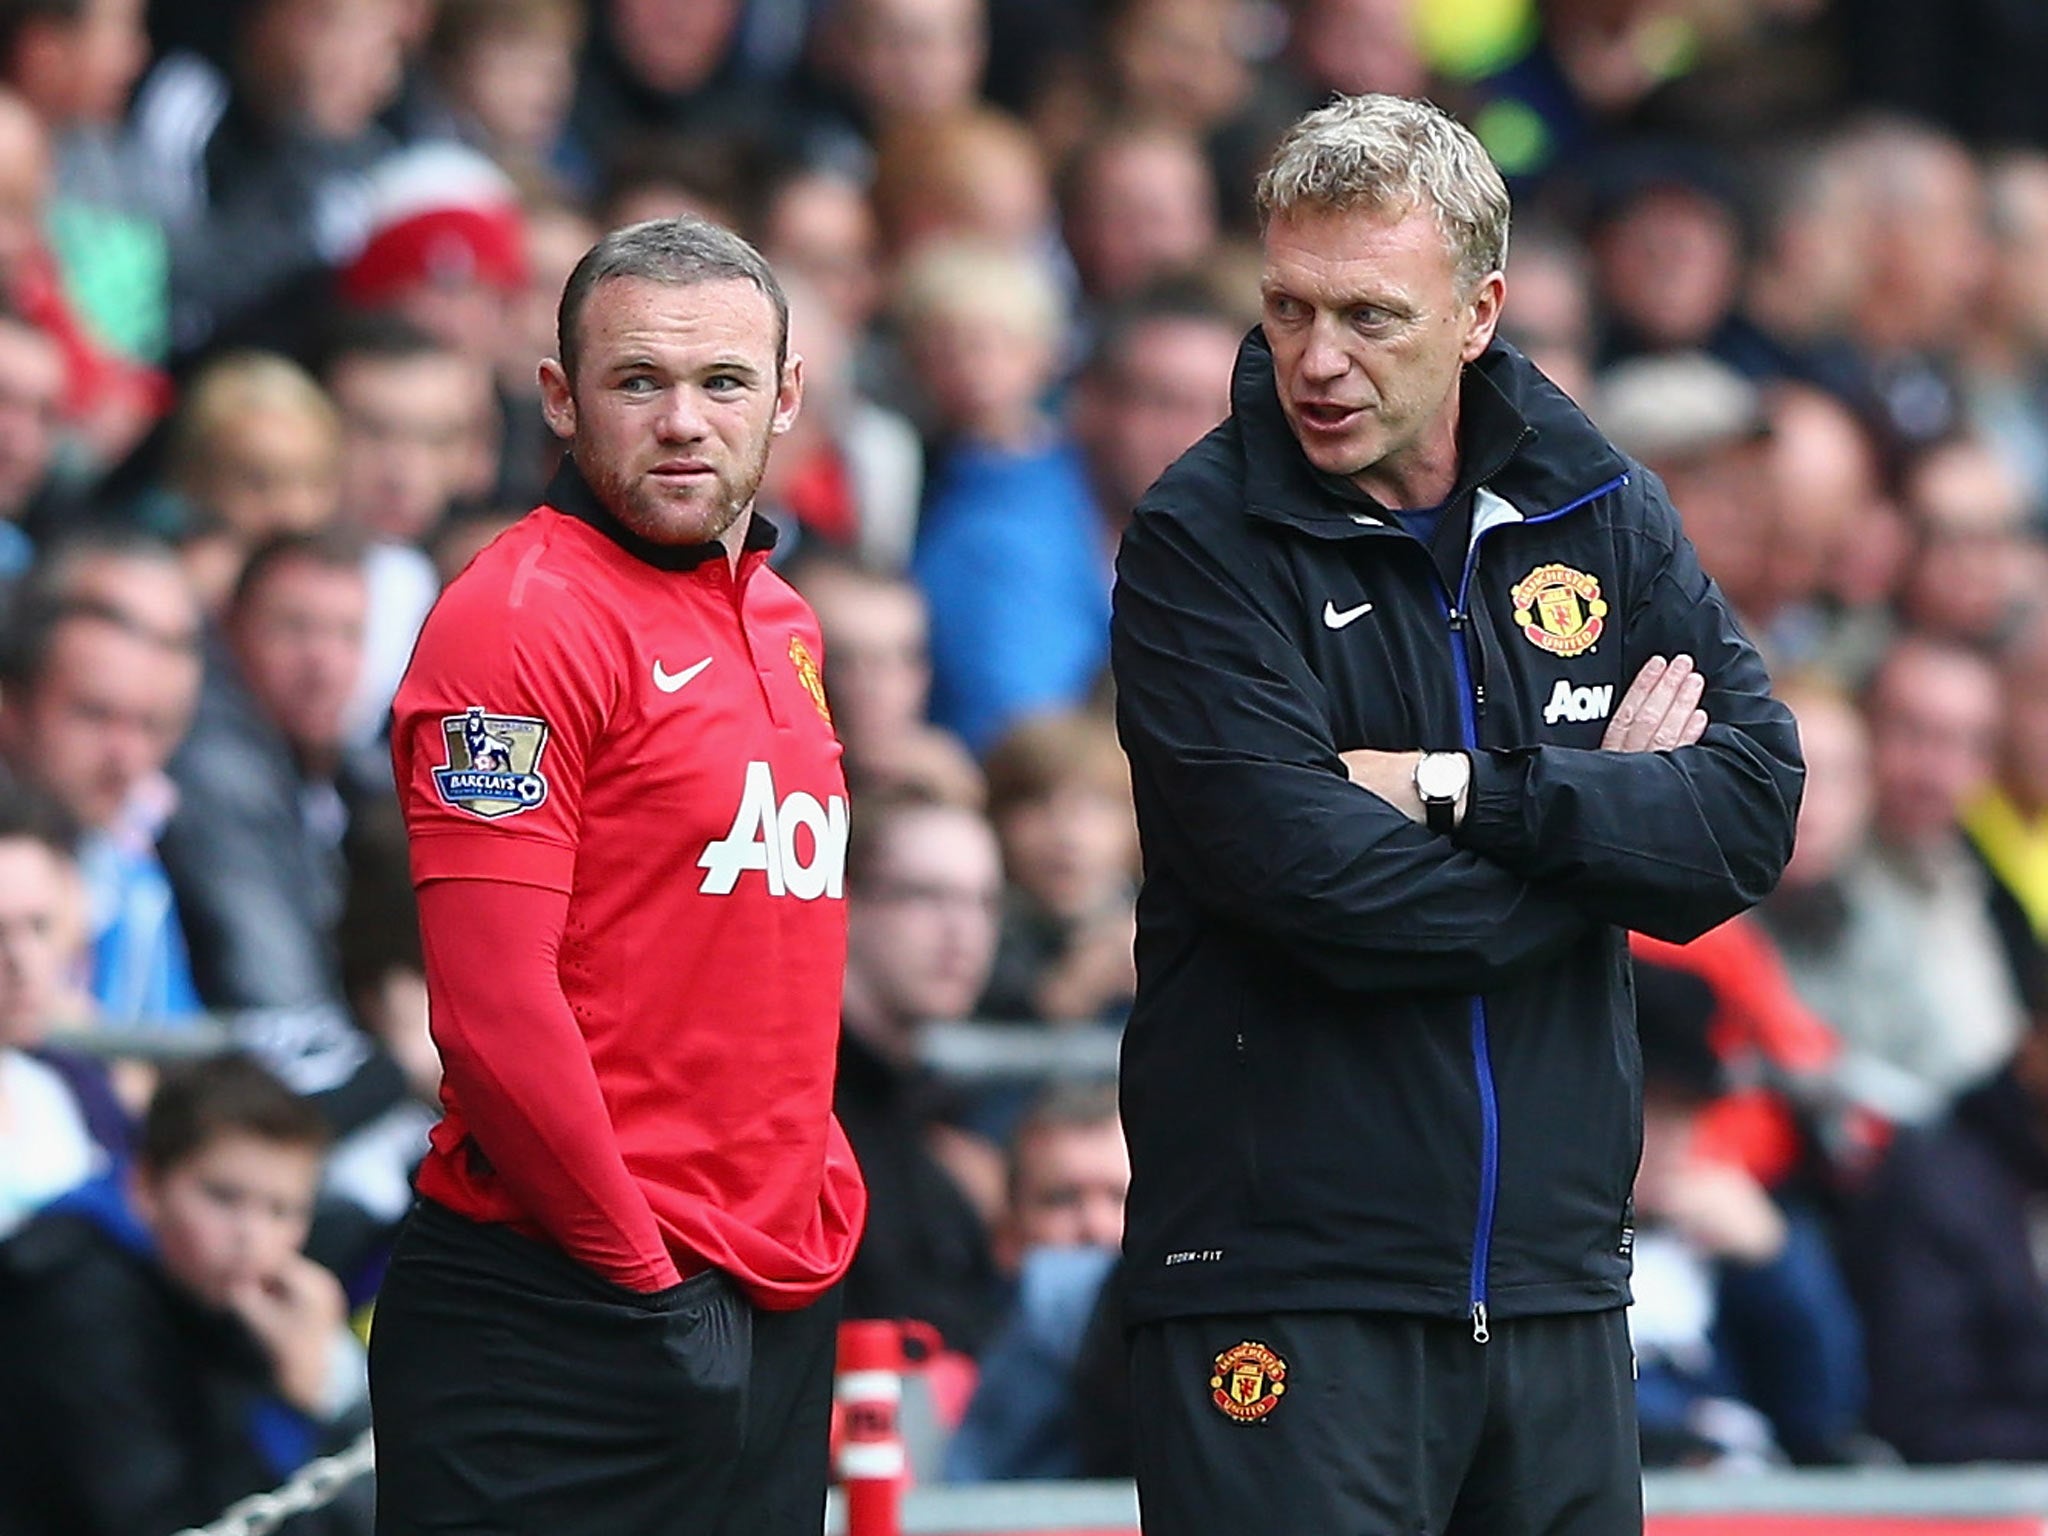 Wayne Rooney alongside David Moyes